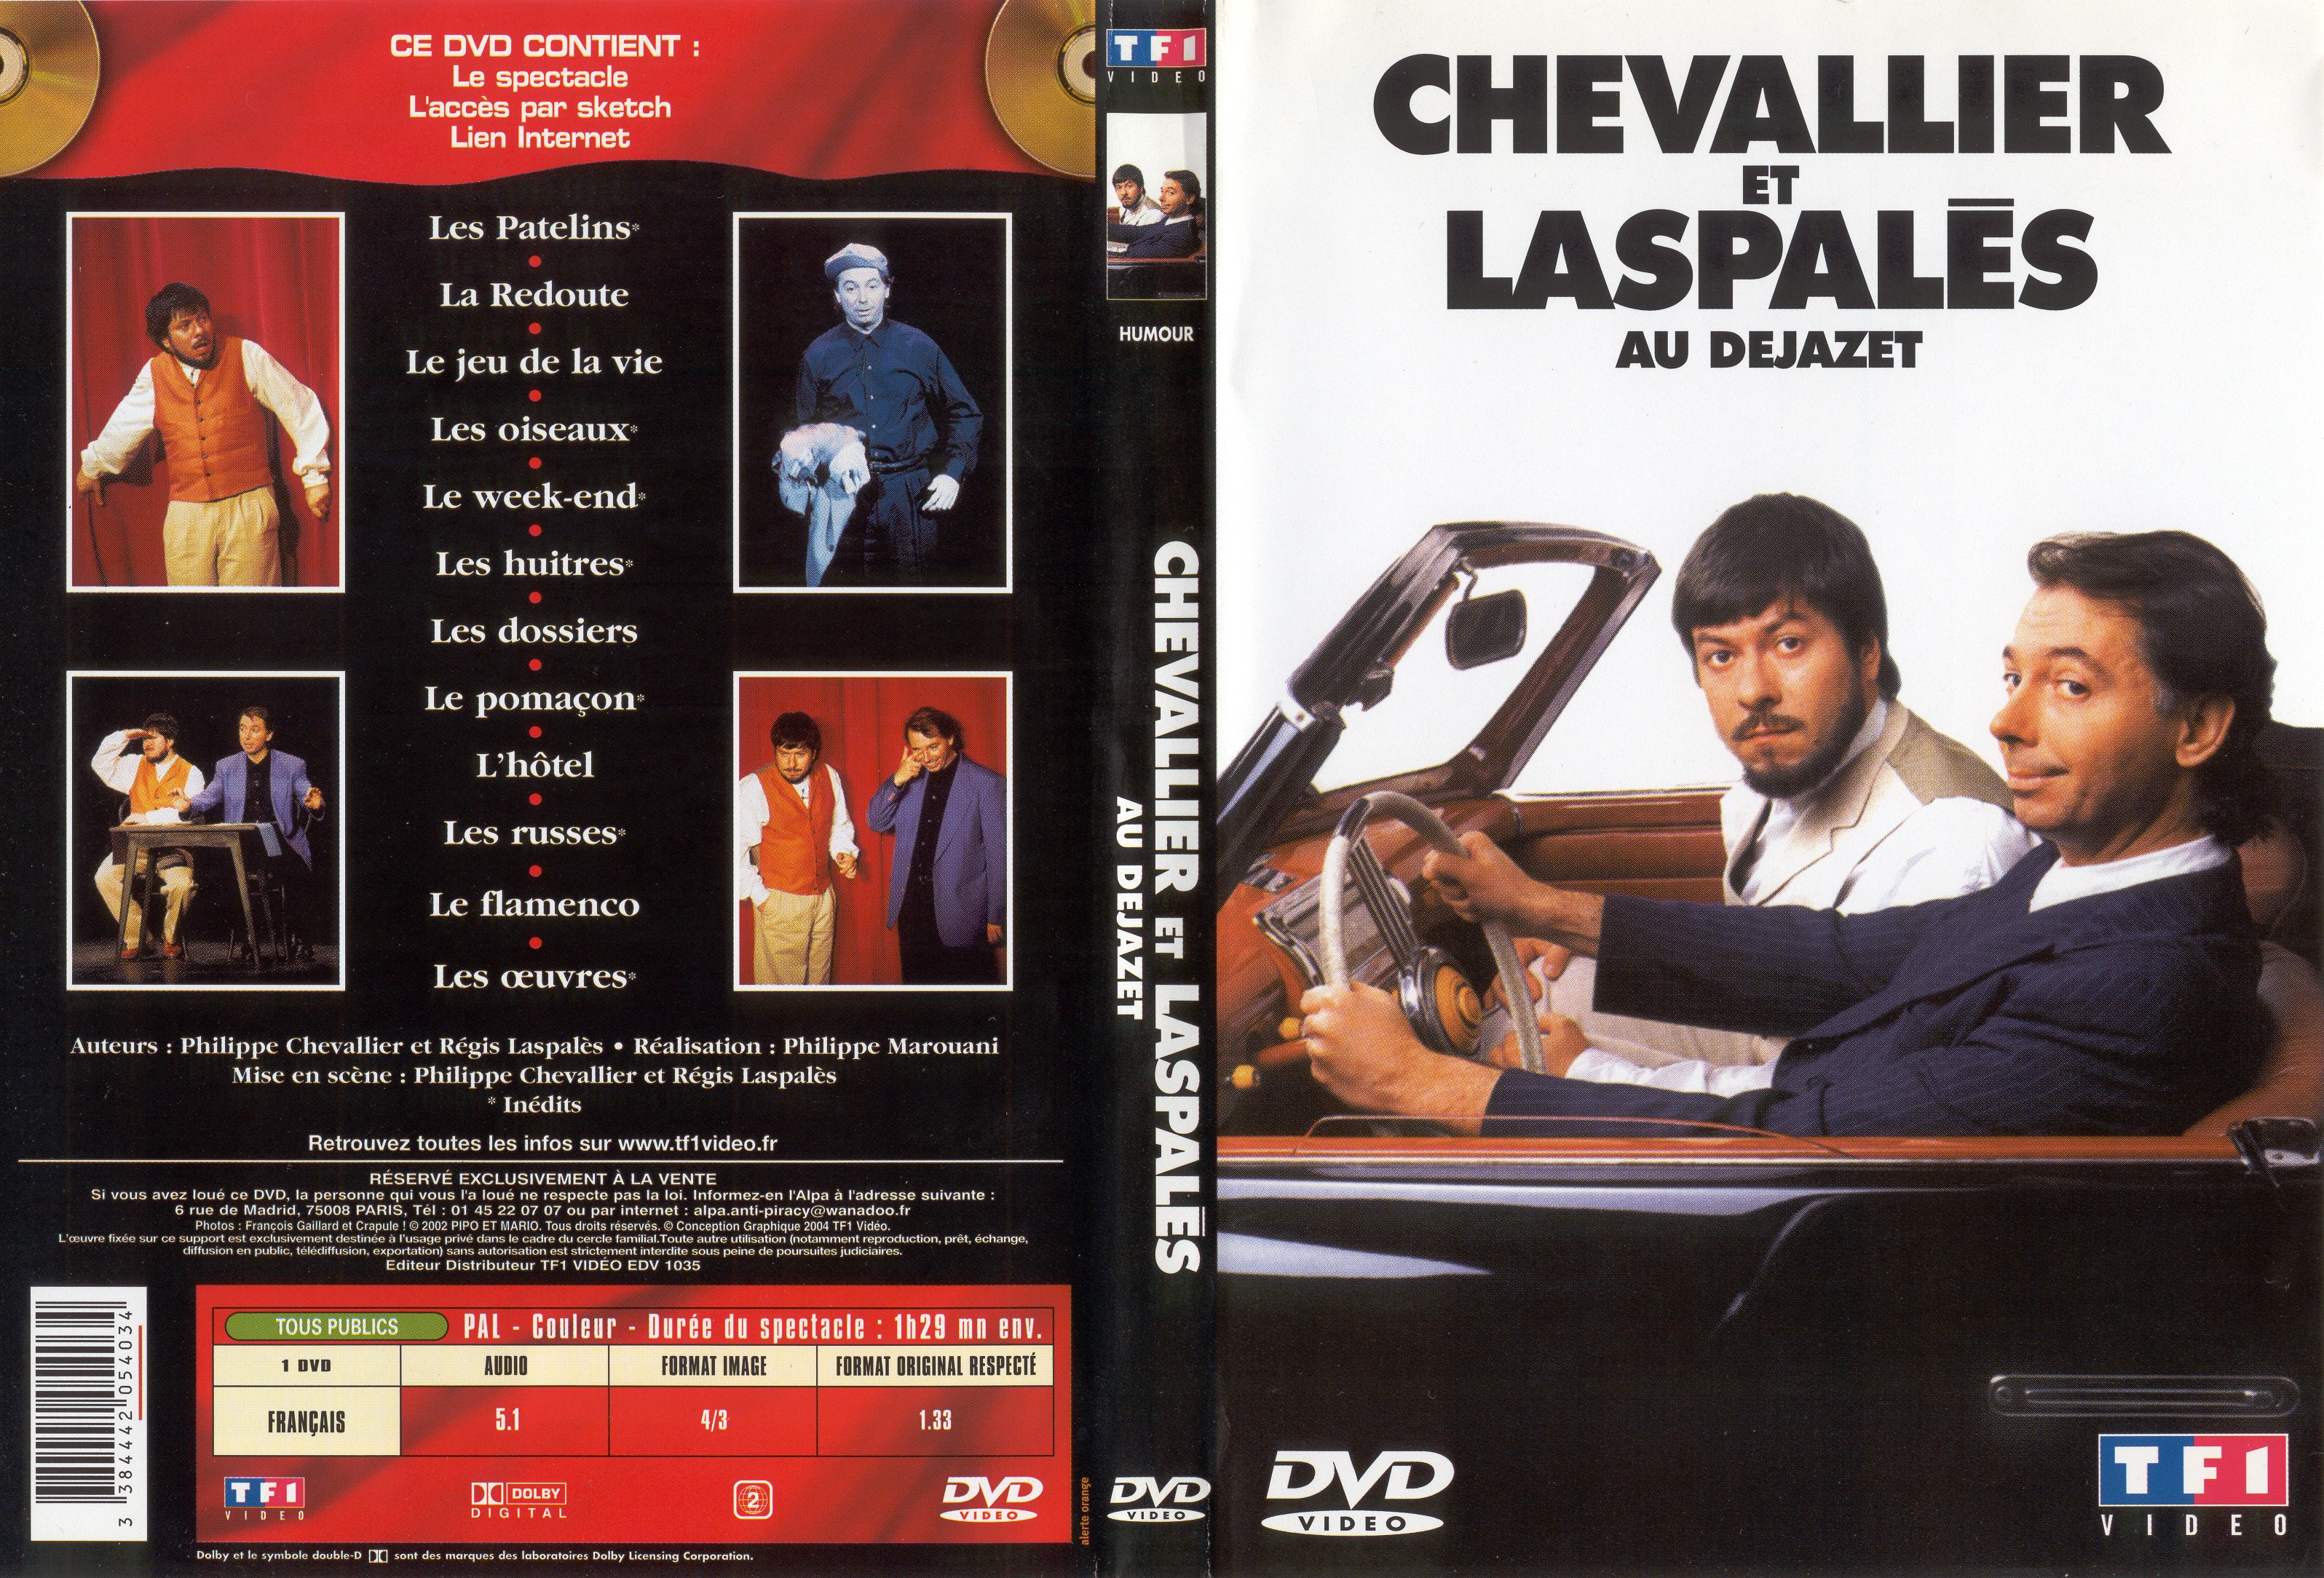 Jaquette DVD Chevalier et Laspales au dejazet